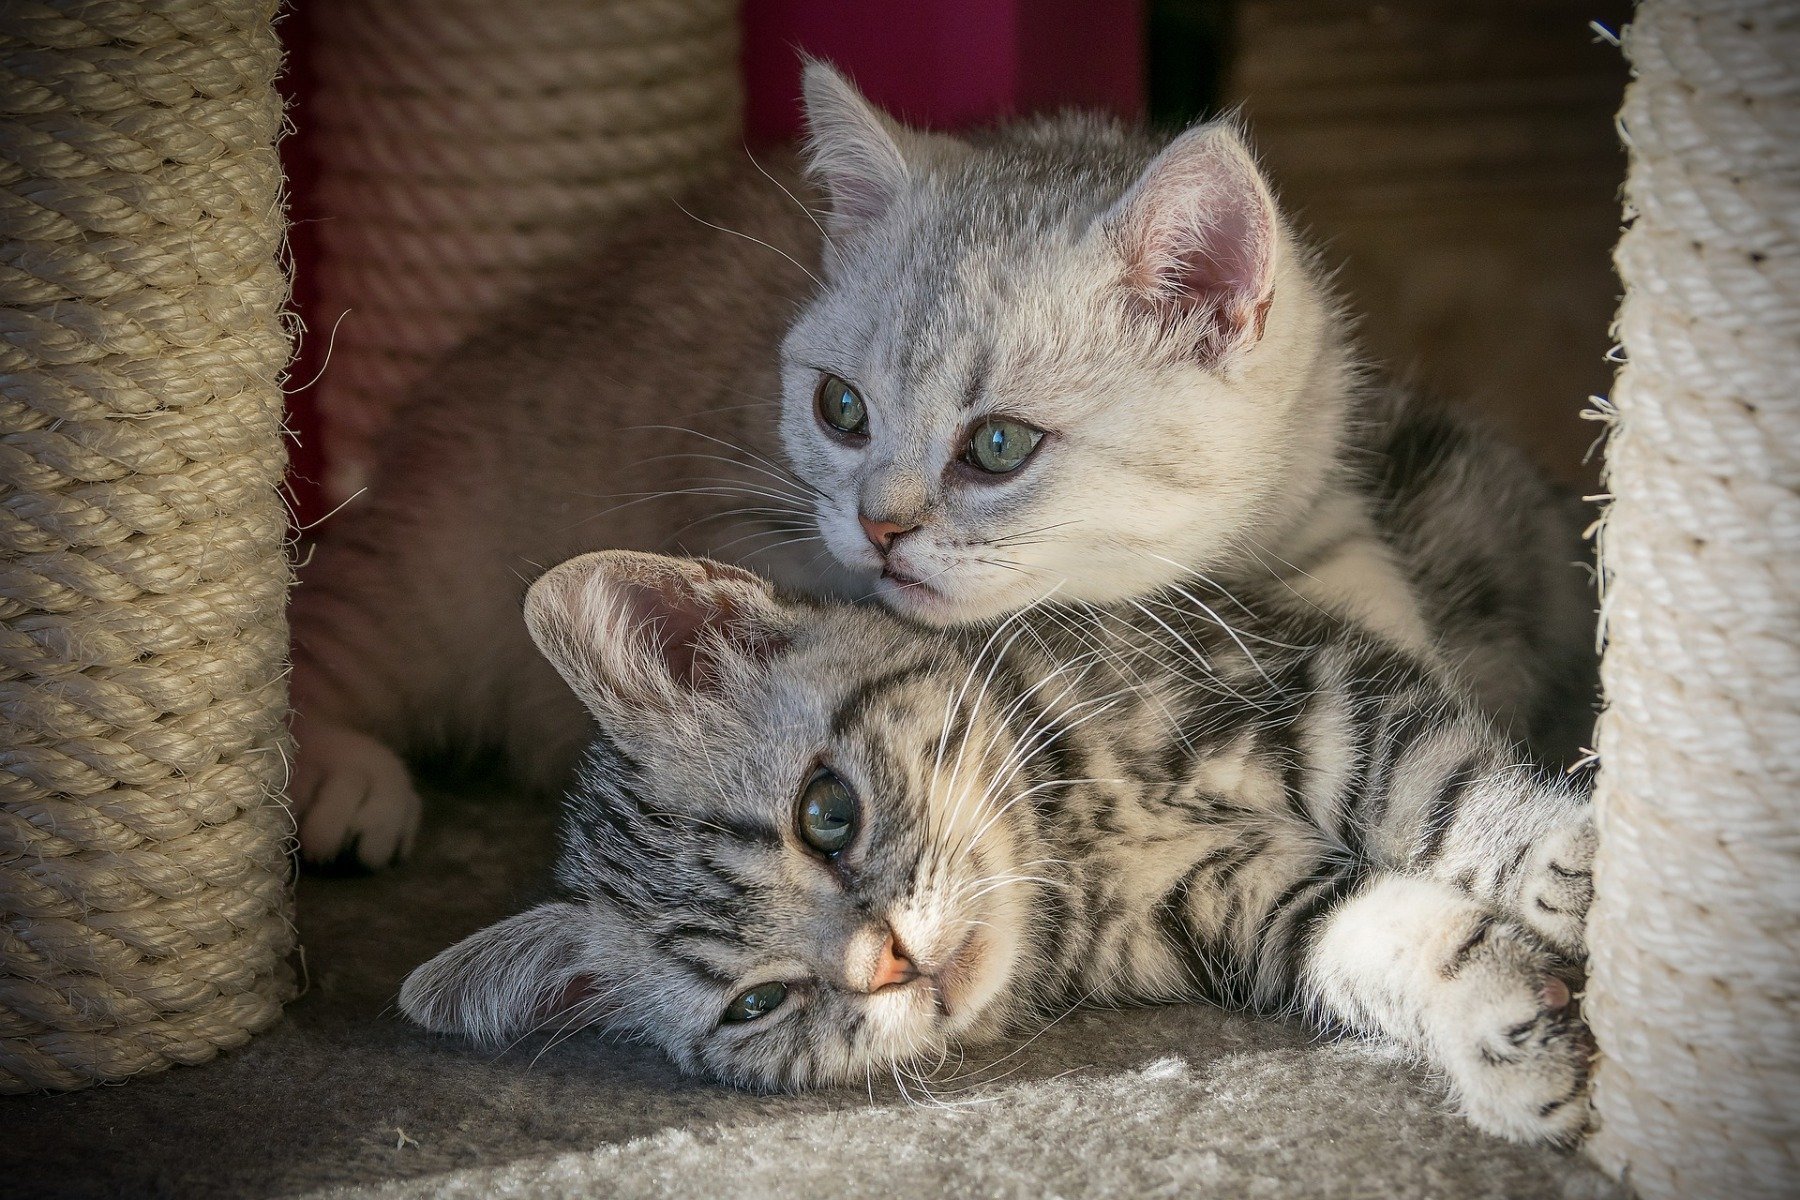 Adopter un chat : 12 choses qu'il faut savoir avant l'adoption !